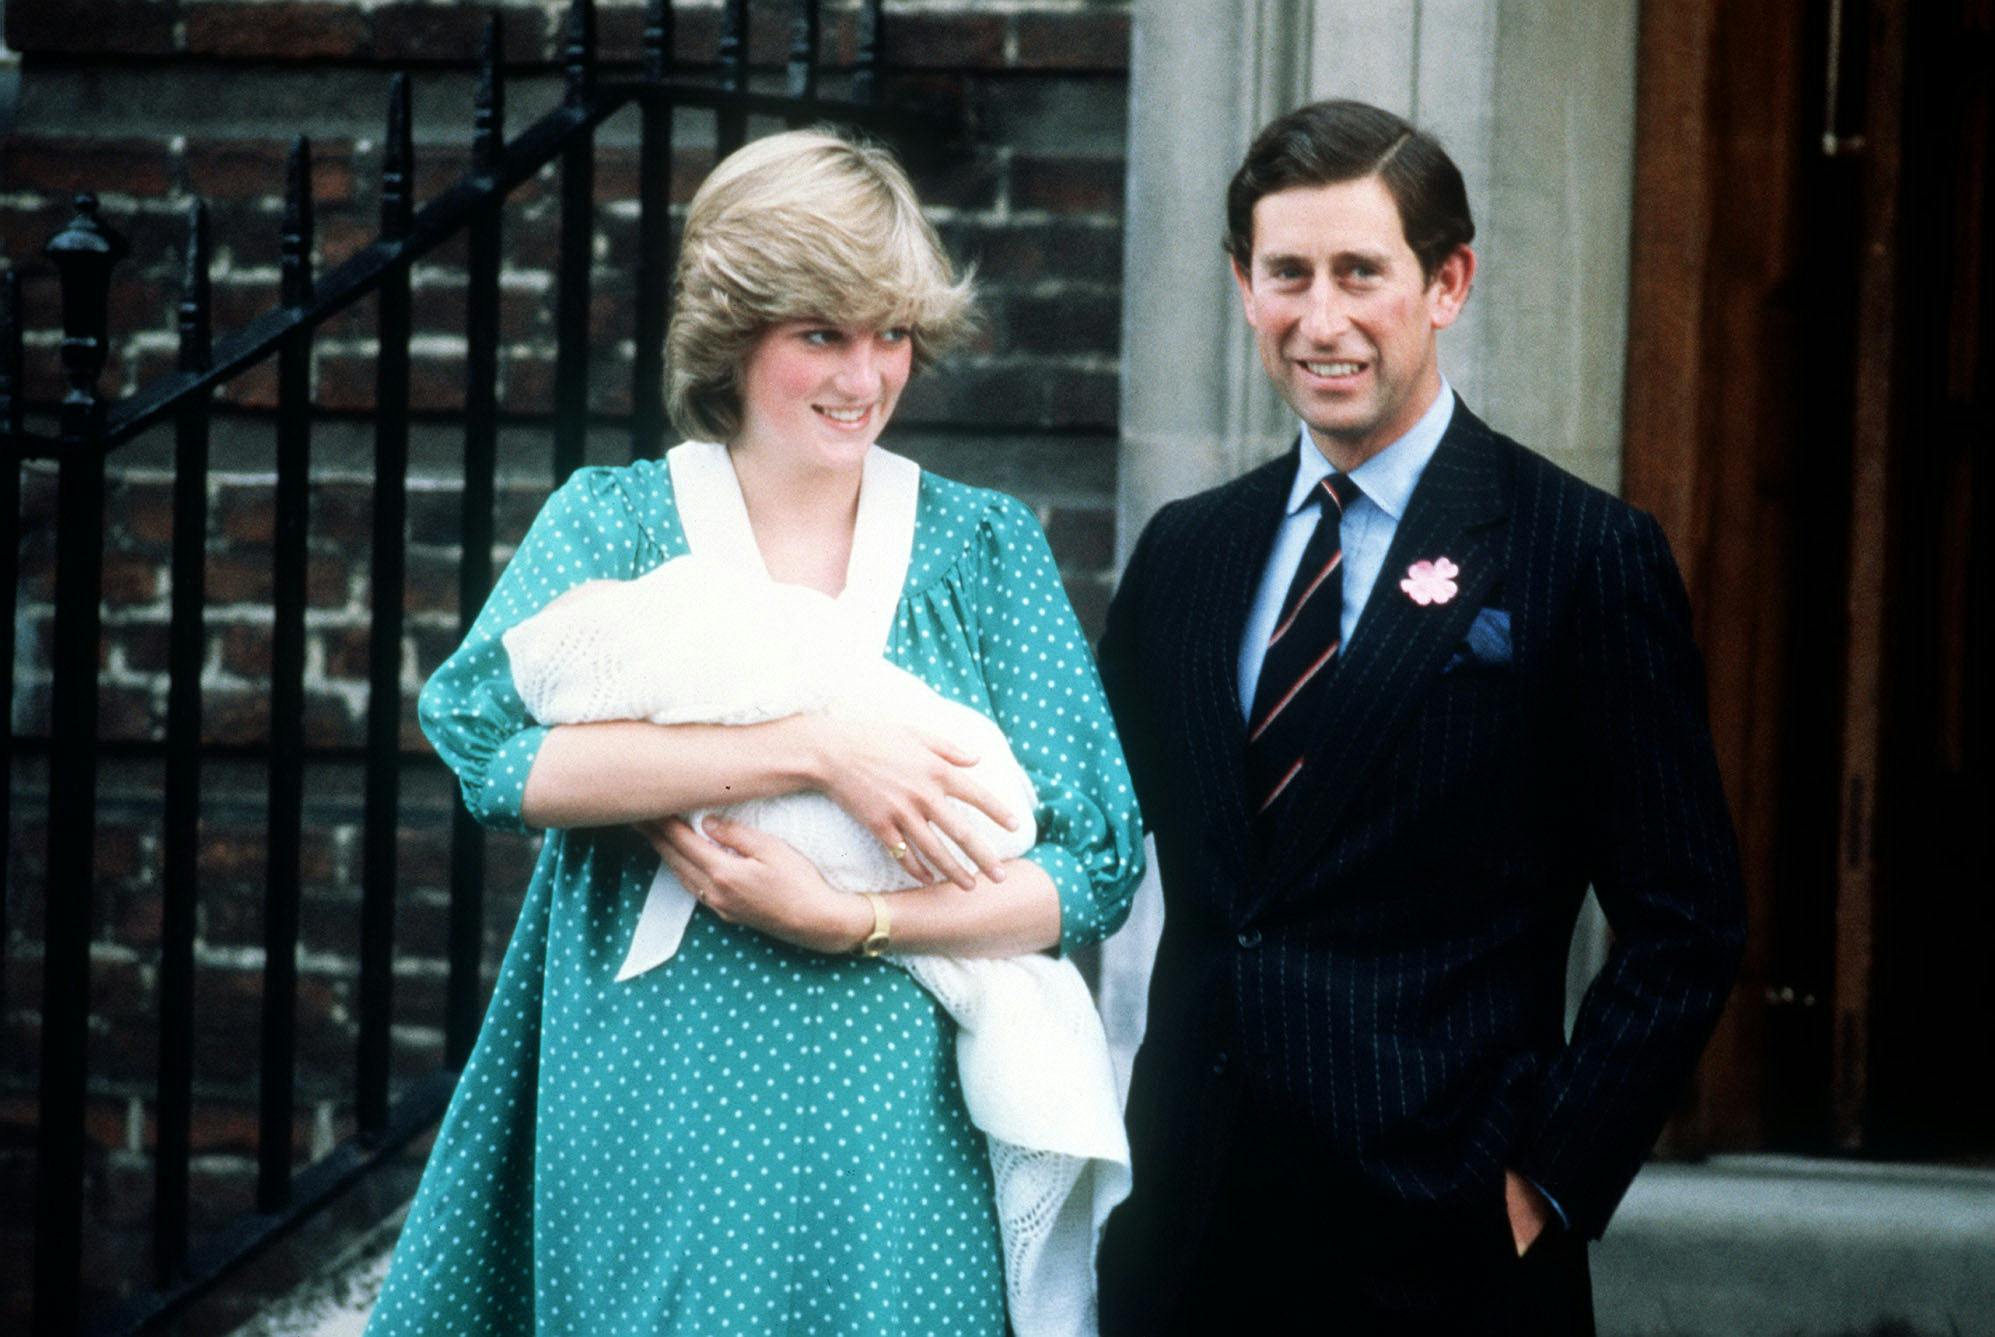 Prinsesse Diana og prins Charles forlader St. Mary's Hospital med deres nyfødte søn prins William i armene.